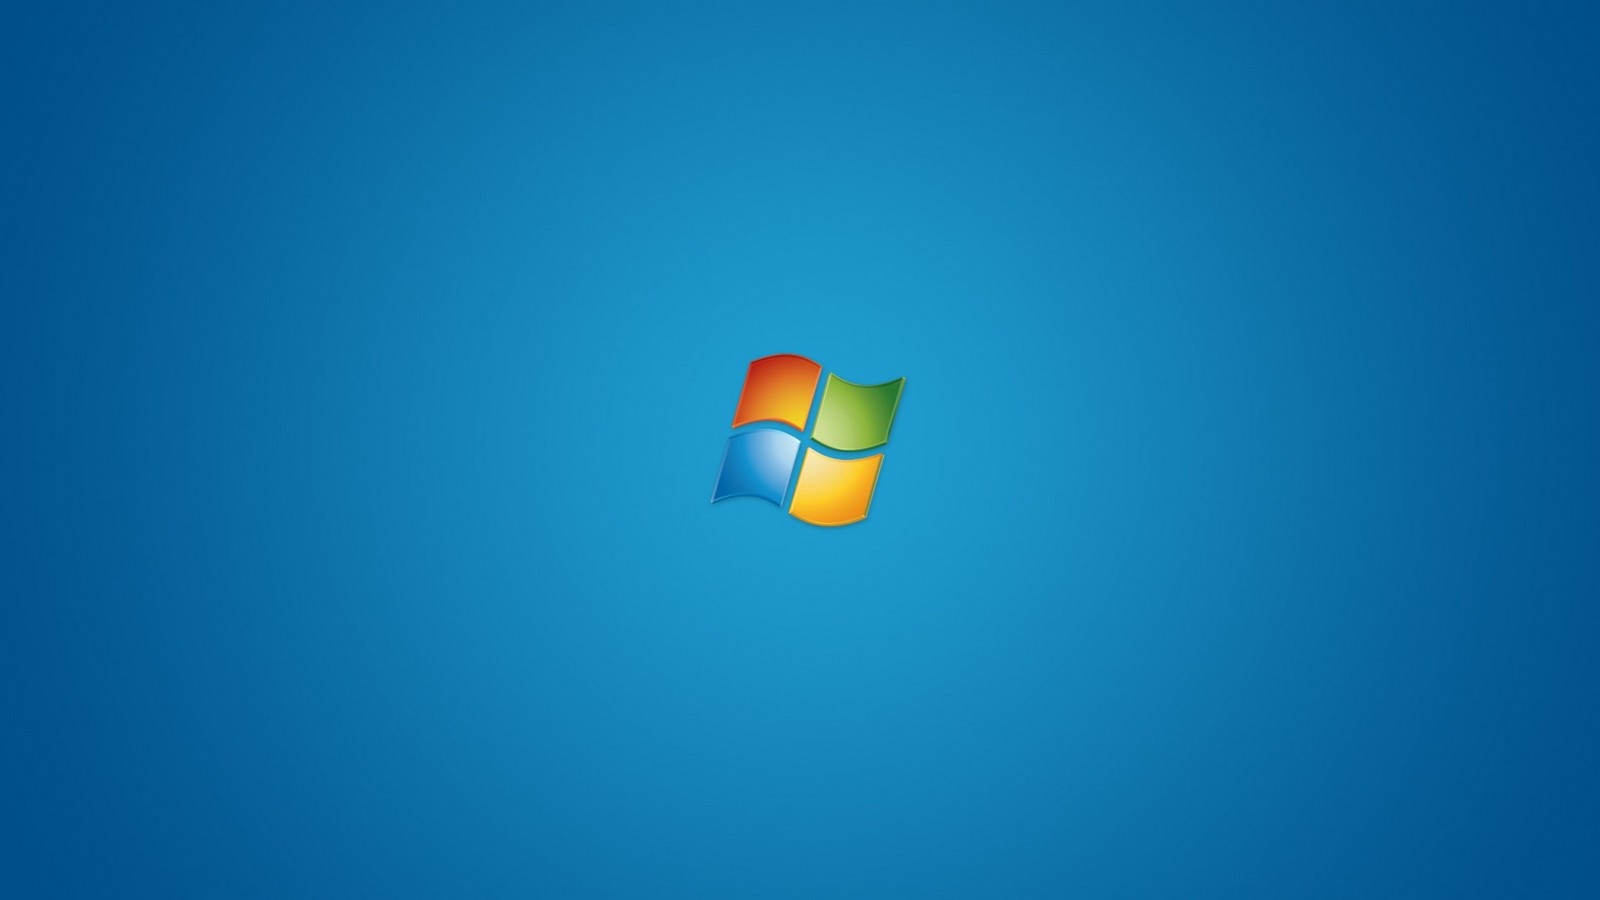 Desktop Wallpaper Windows 7 69 pictures